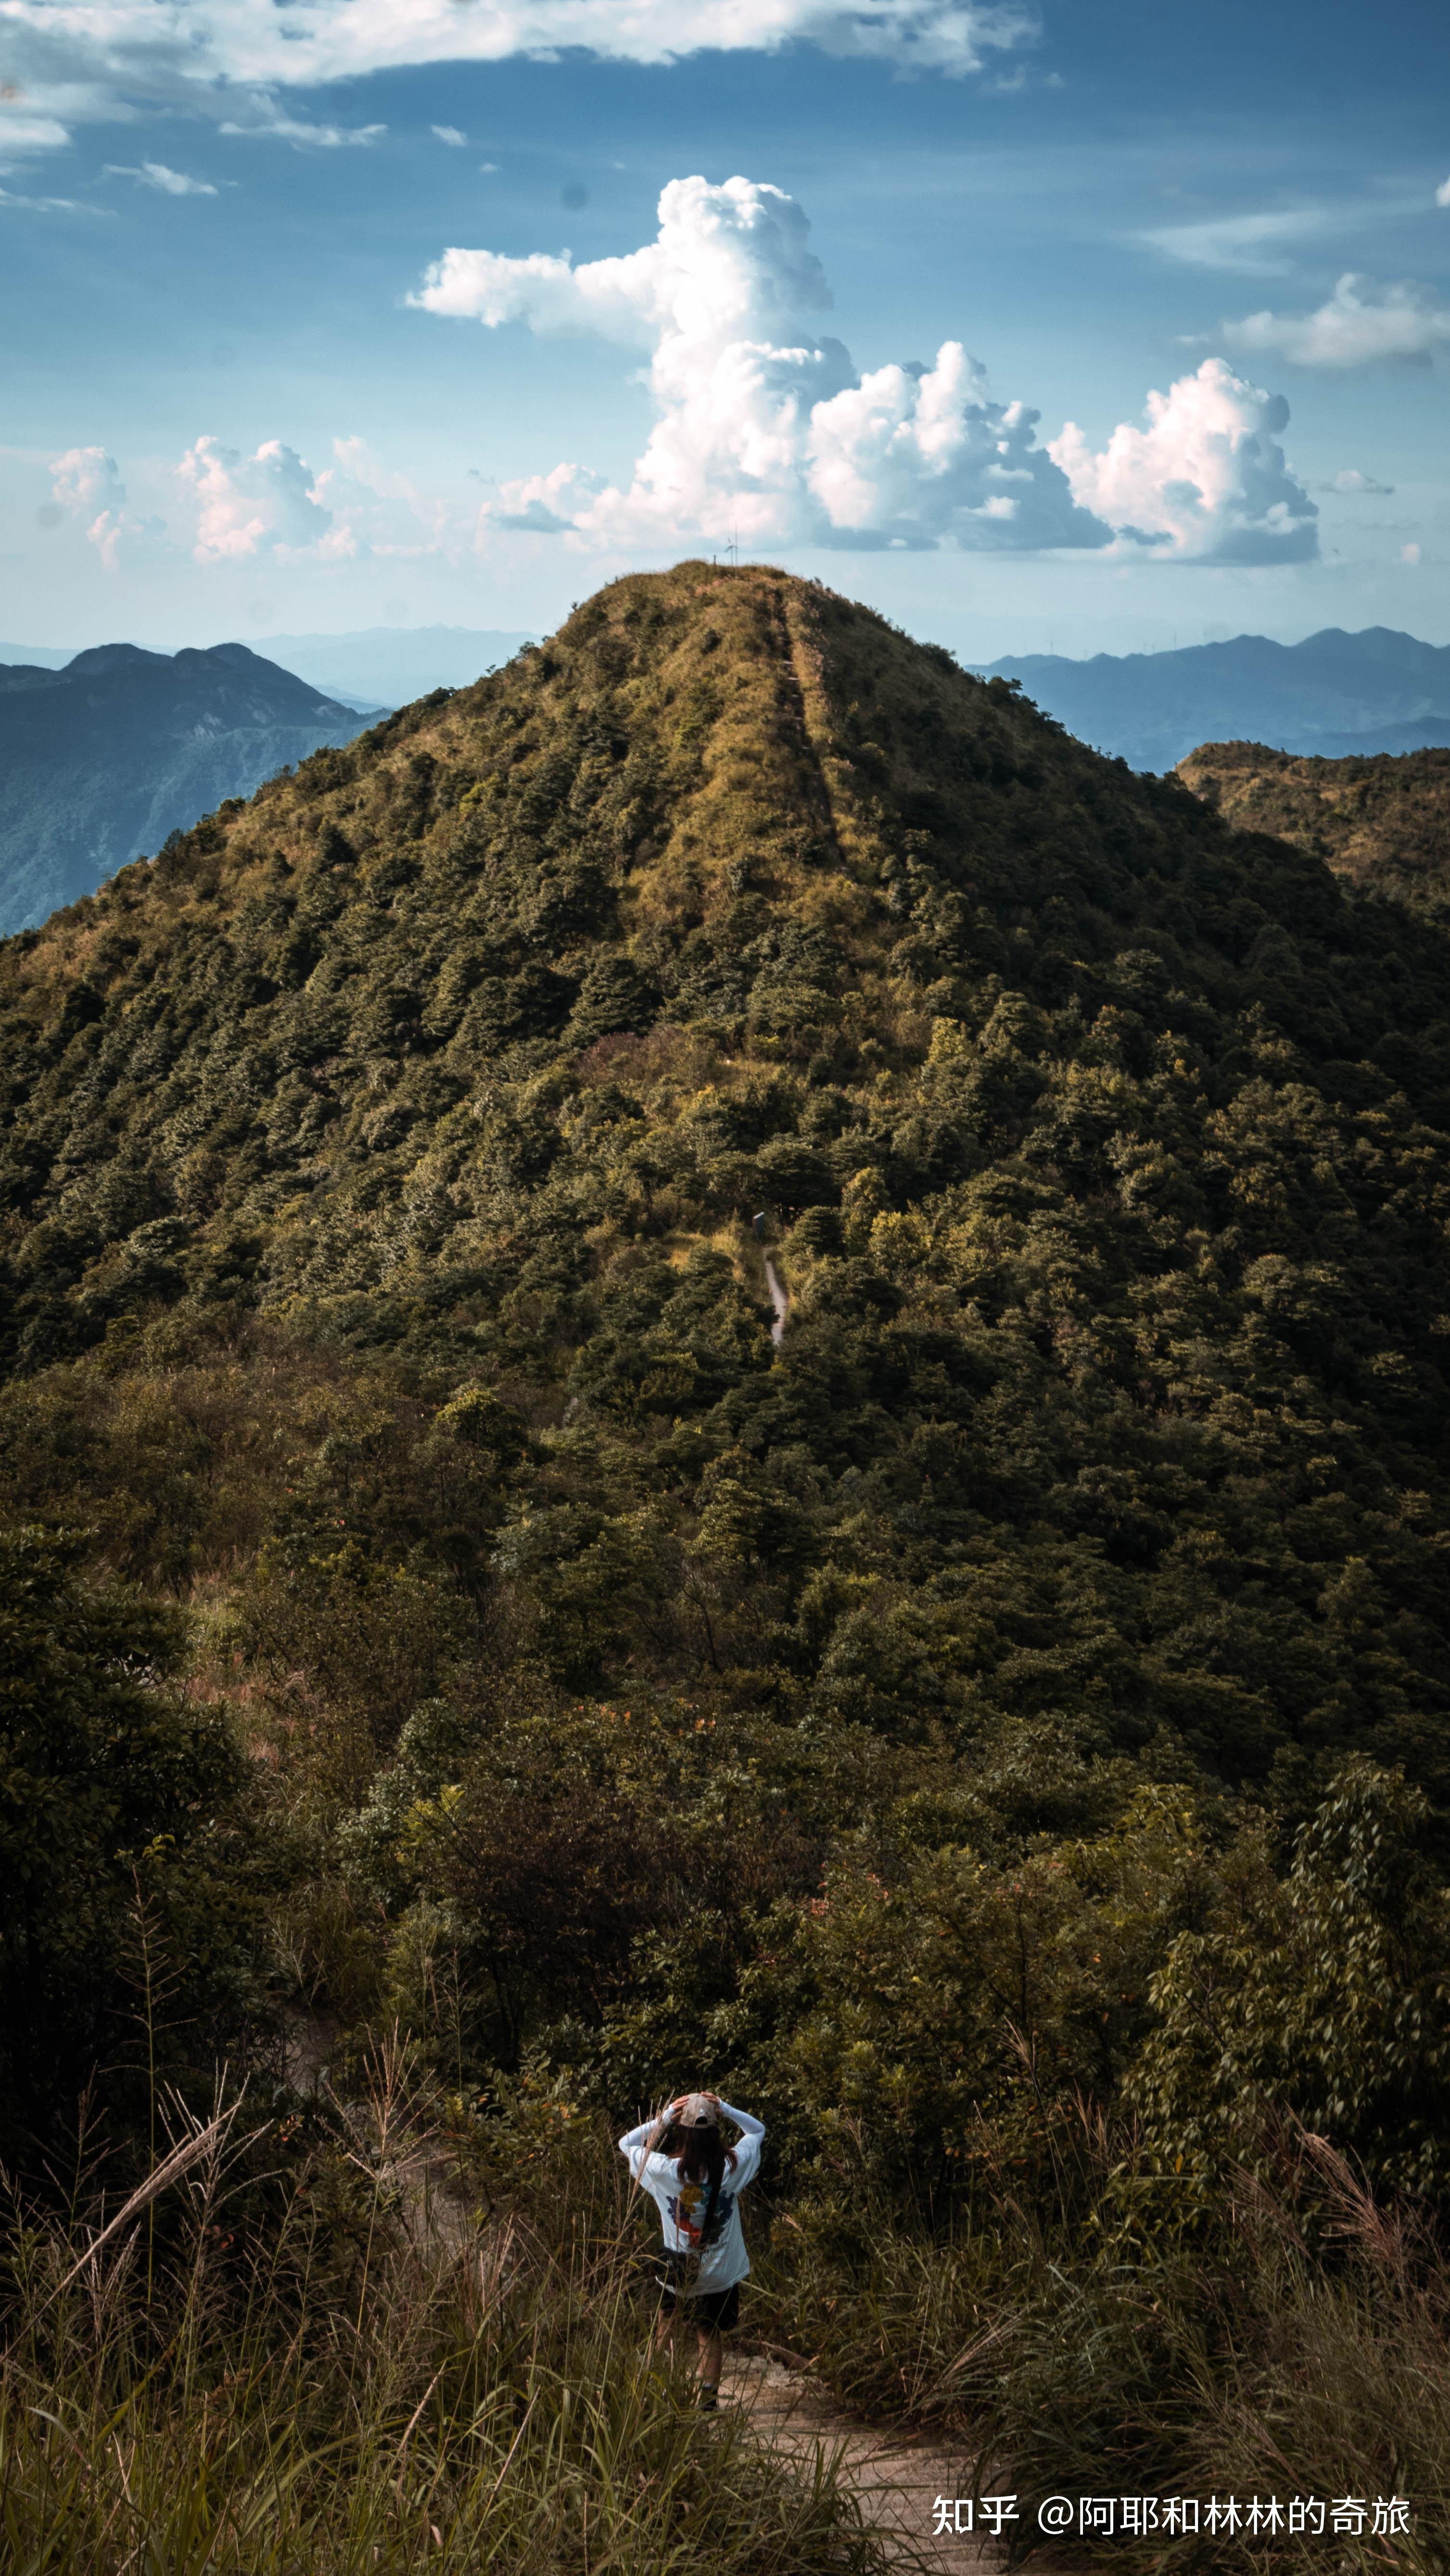 登顶广州第一峰天堂顶徒步爬山全攻略0969